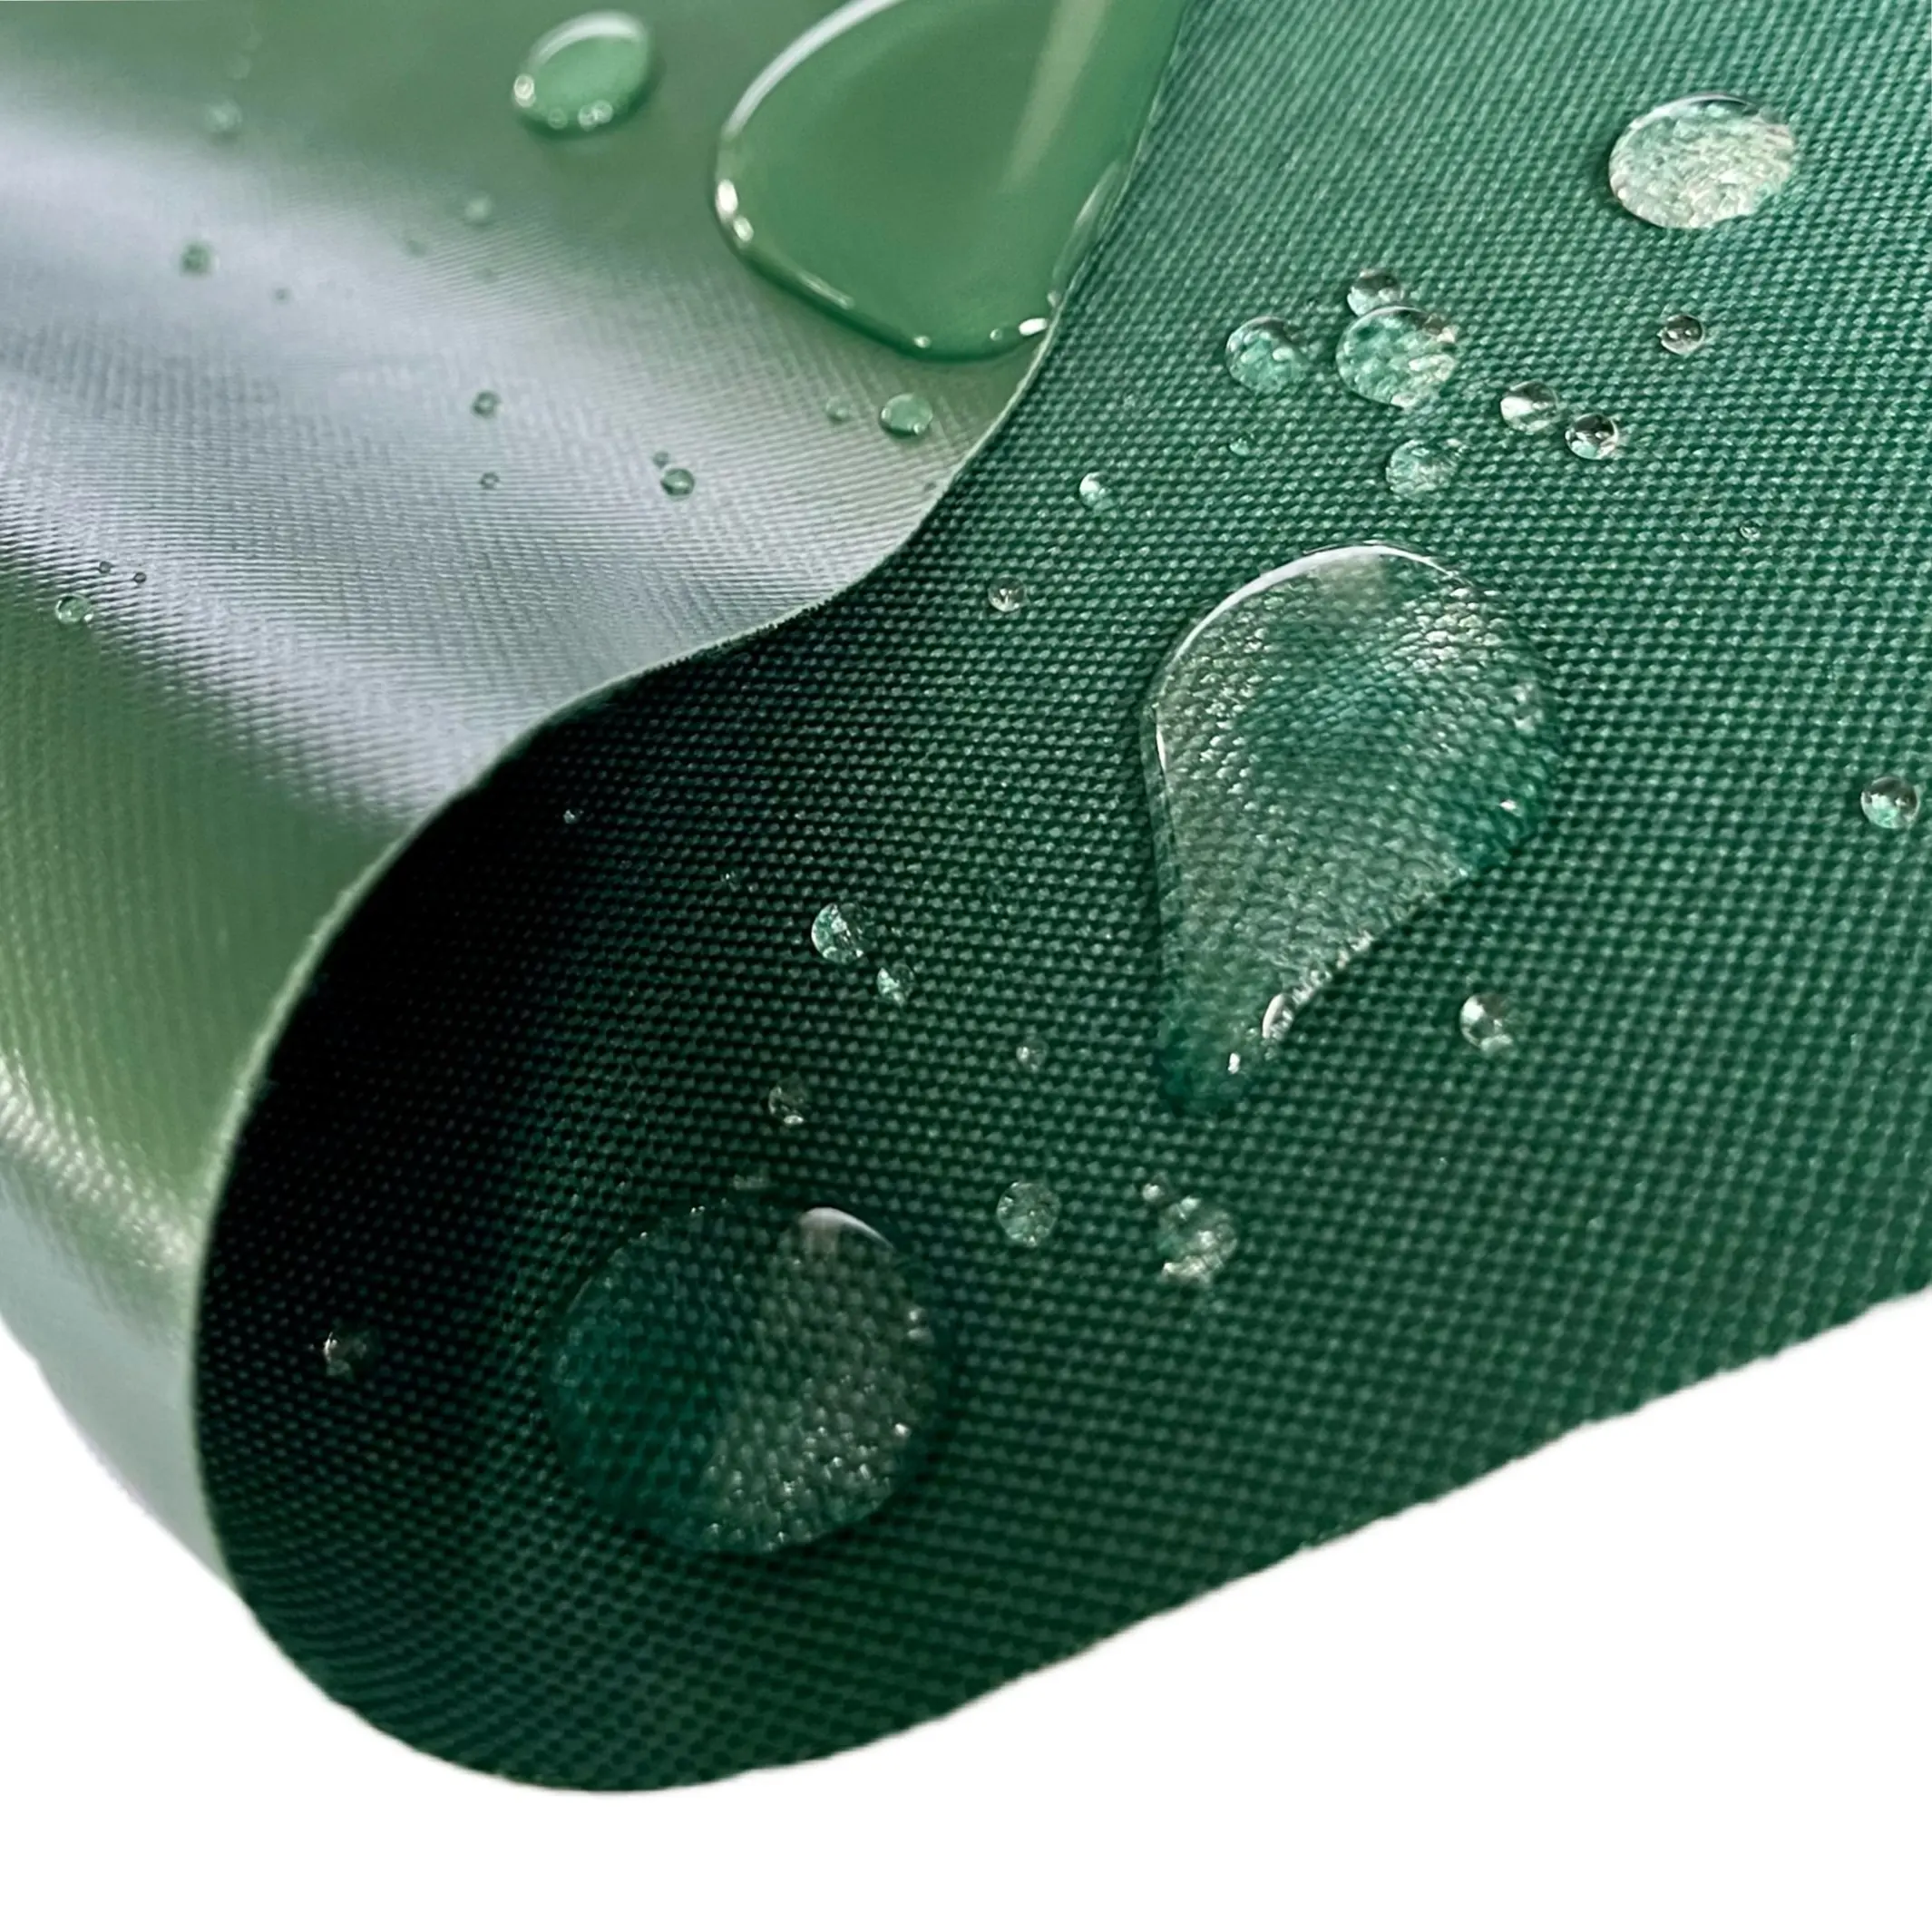 Водонепроницаемый 300D/600D полиэстер Оксфорд ткань GRS Rpet полиэстер Оксфорд ткань для сумок с ПВХ/полиуретановым покрытием